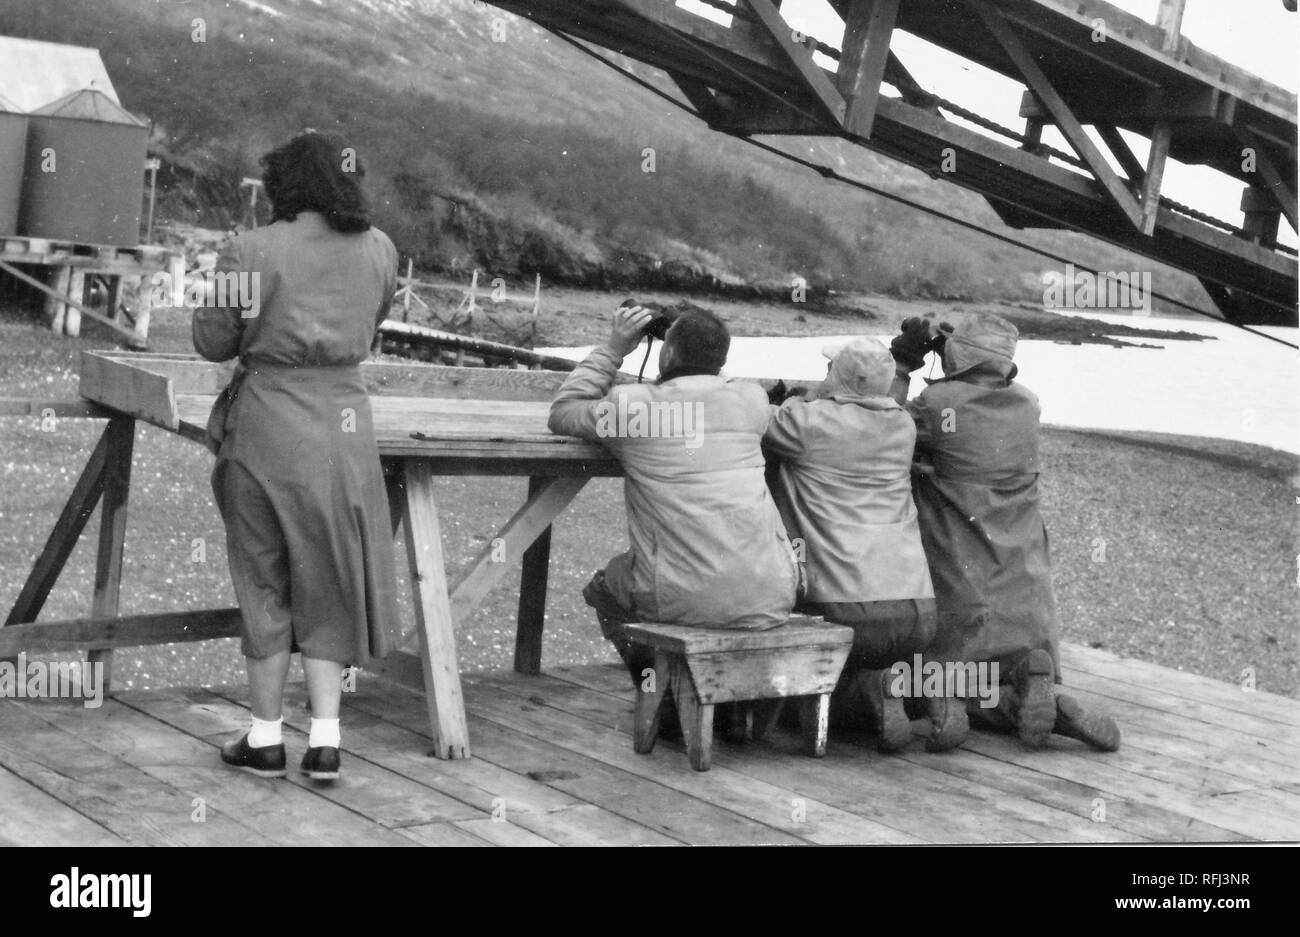 Schwarz-weiß Foto einer Frau und drei Männern, Schuß von hinten; die Frau trägt ein Tee - Länge Kleid oder Rock und Söckchen, und steht nur der Männer, die Mäntel und Schuhe tragen, und durch ein Fernglas schauen, während Sitzen und Knien auf einem wackeligen Holztisch am Rande einer Pier gebaut; mit einer Steigung, freiliegenden Shoreline, einem Körper von Wasser, und eine weitere Pier im Hintergrund sichtbar, und ein landesteg sichtbar in der oberen rechten; während einer Jagd und Angeln in Alaska, 1955 entfernt fotografiert. () Stockfoto